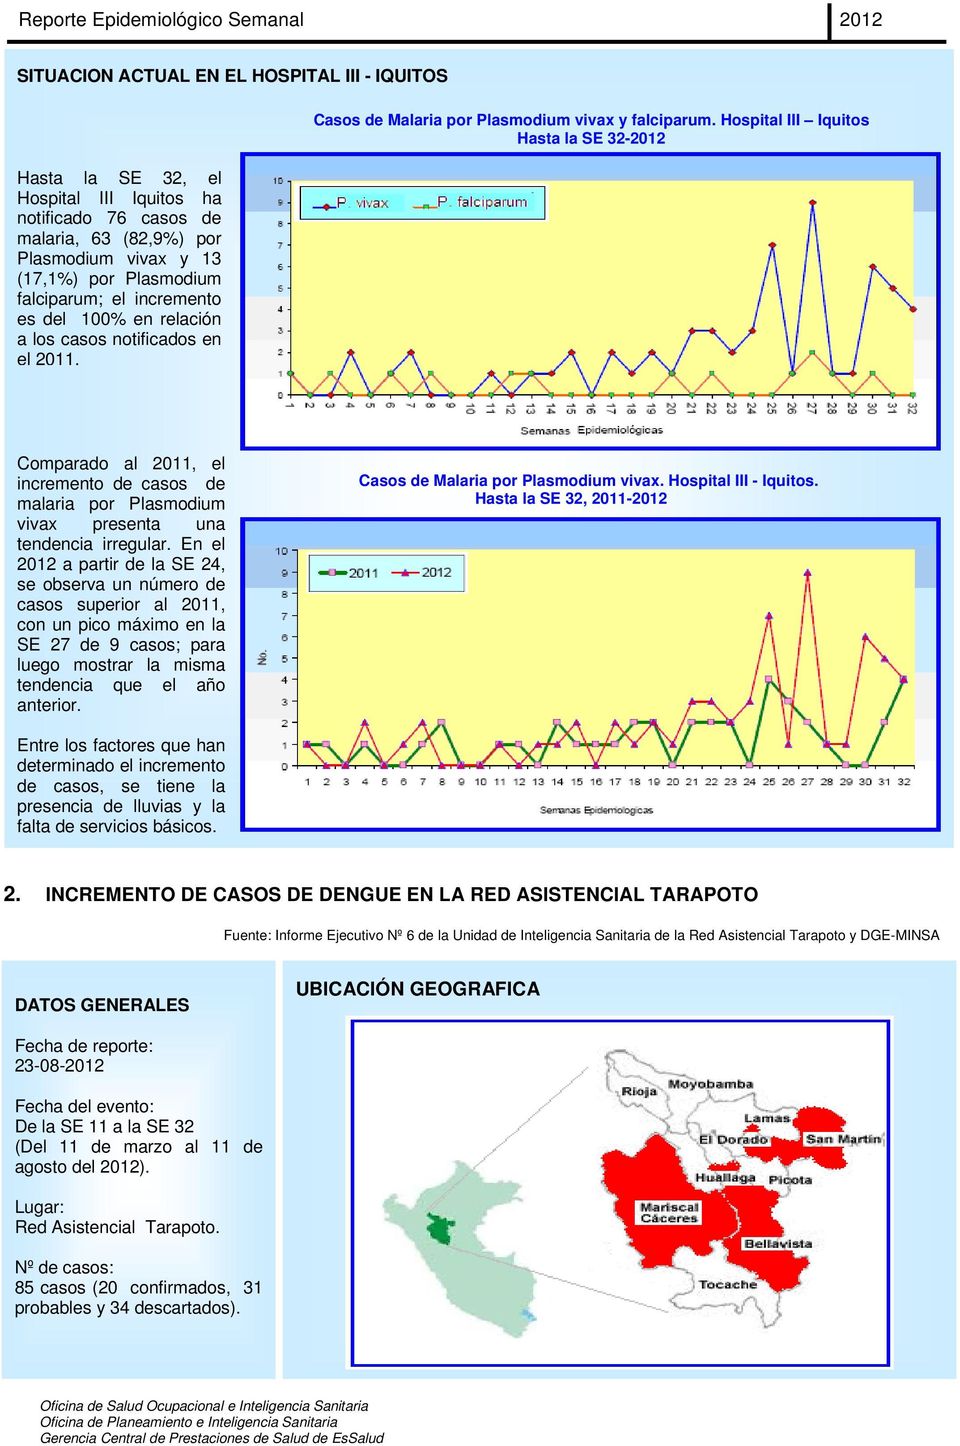 Hospital III Iquitos Hasta la SE 32-2012 Comparado al 2011, el incremento de casos de malaria por Plasmodium vivax presenta una tendencia irregular.